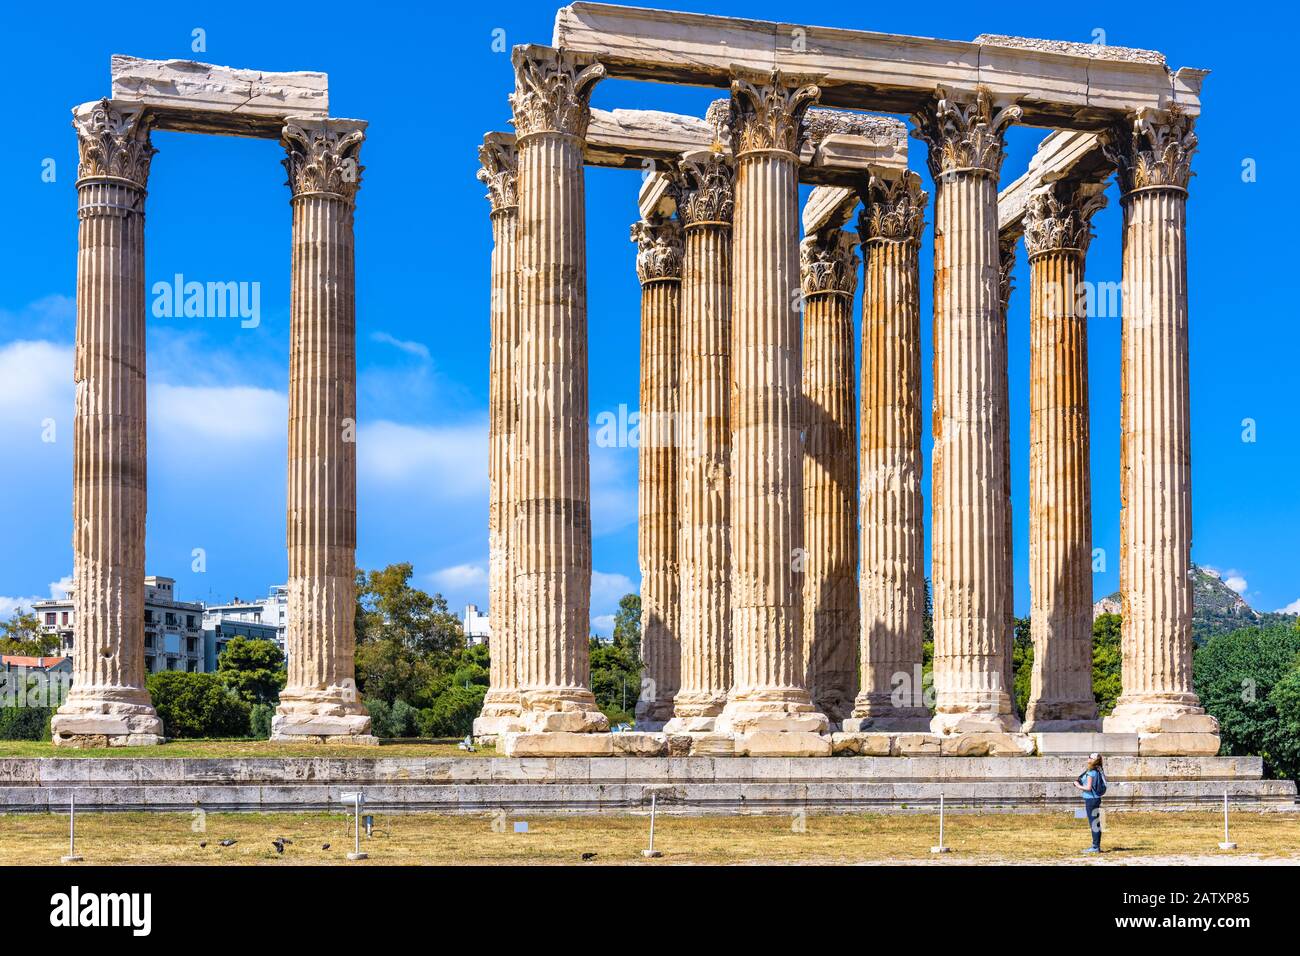 Tempel des olympischen Zeus, Athen, Griechenland. Es ist eine berühmte Touristenattraktion Athens. Panorama der großen Antiken griechischen Säulen im Athener Zentrum Stockfoto